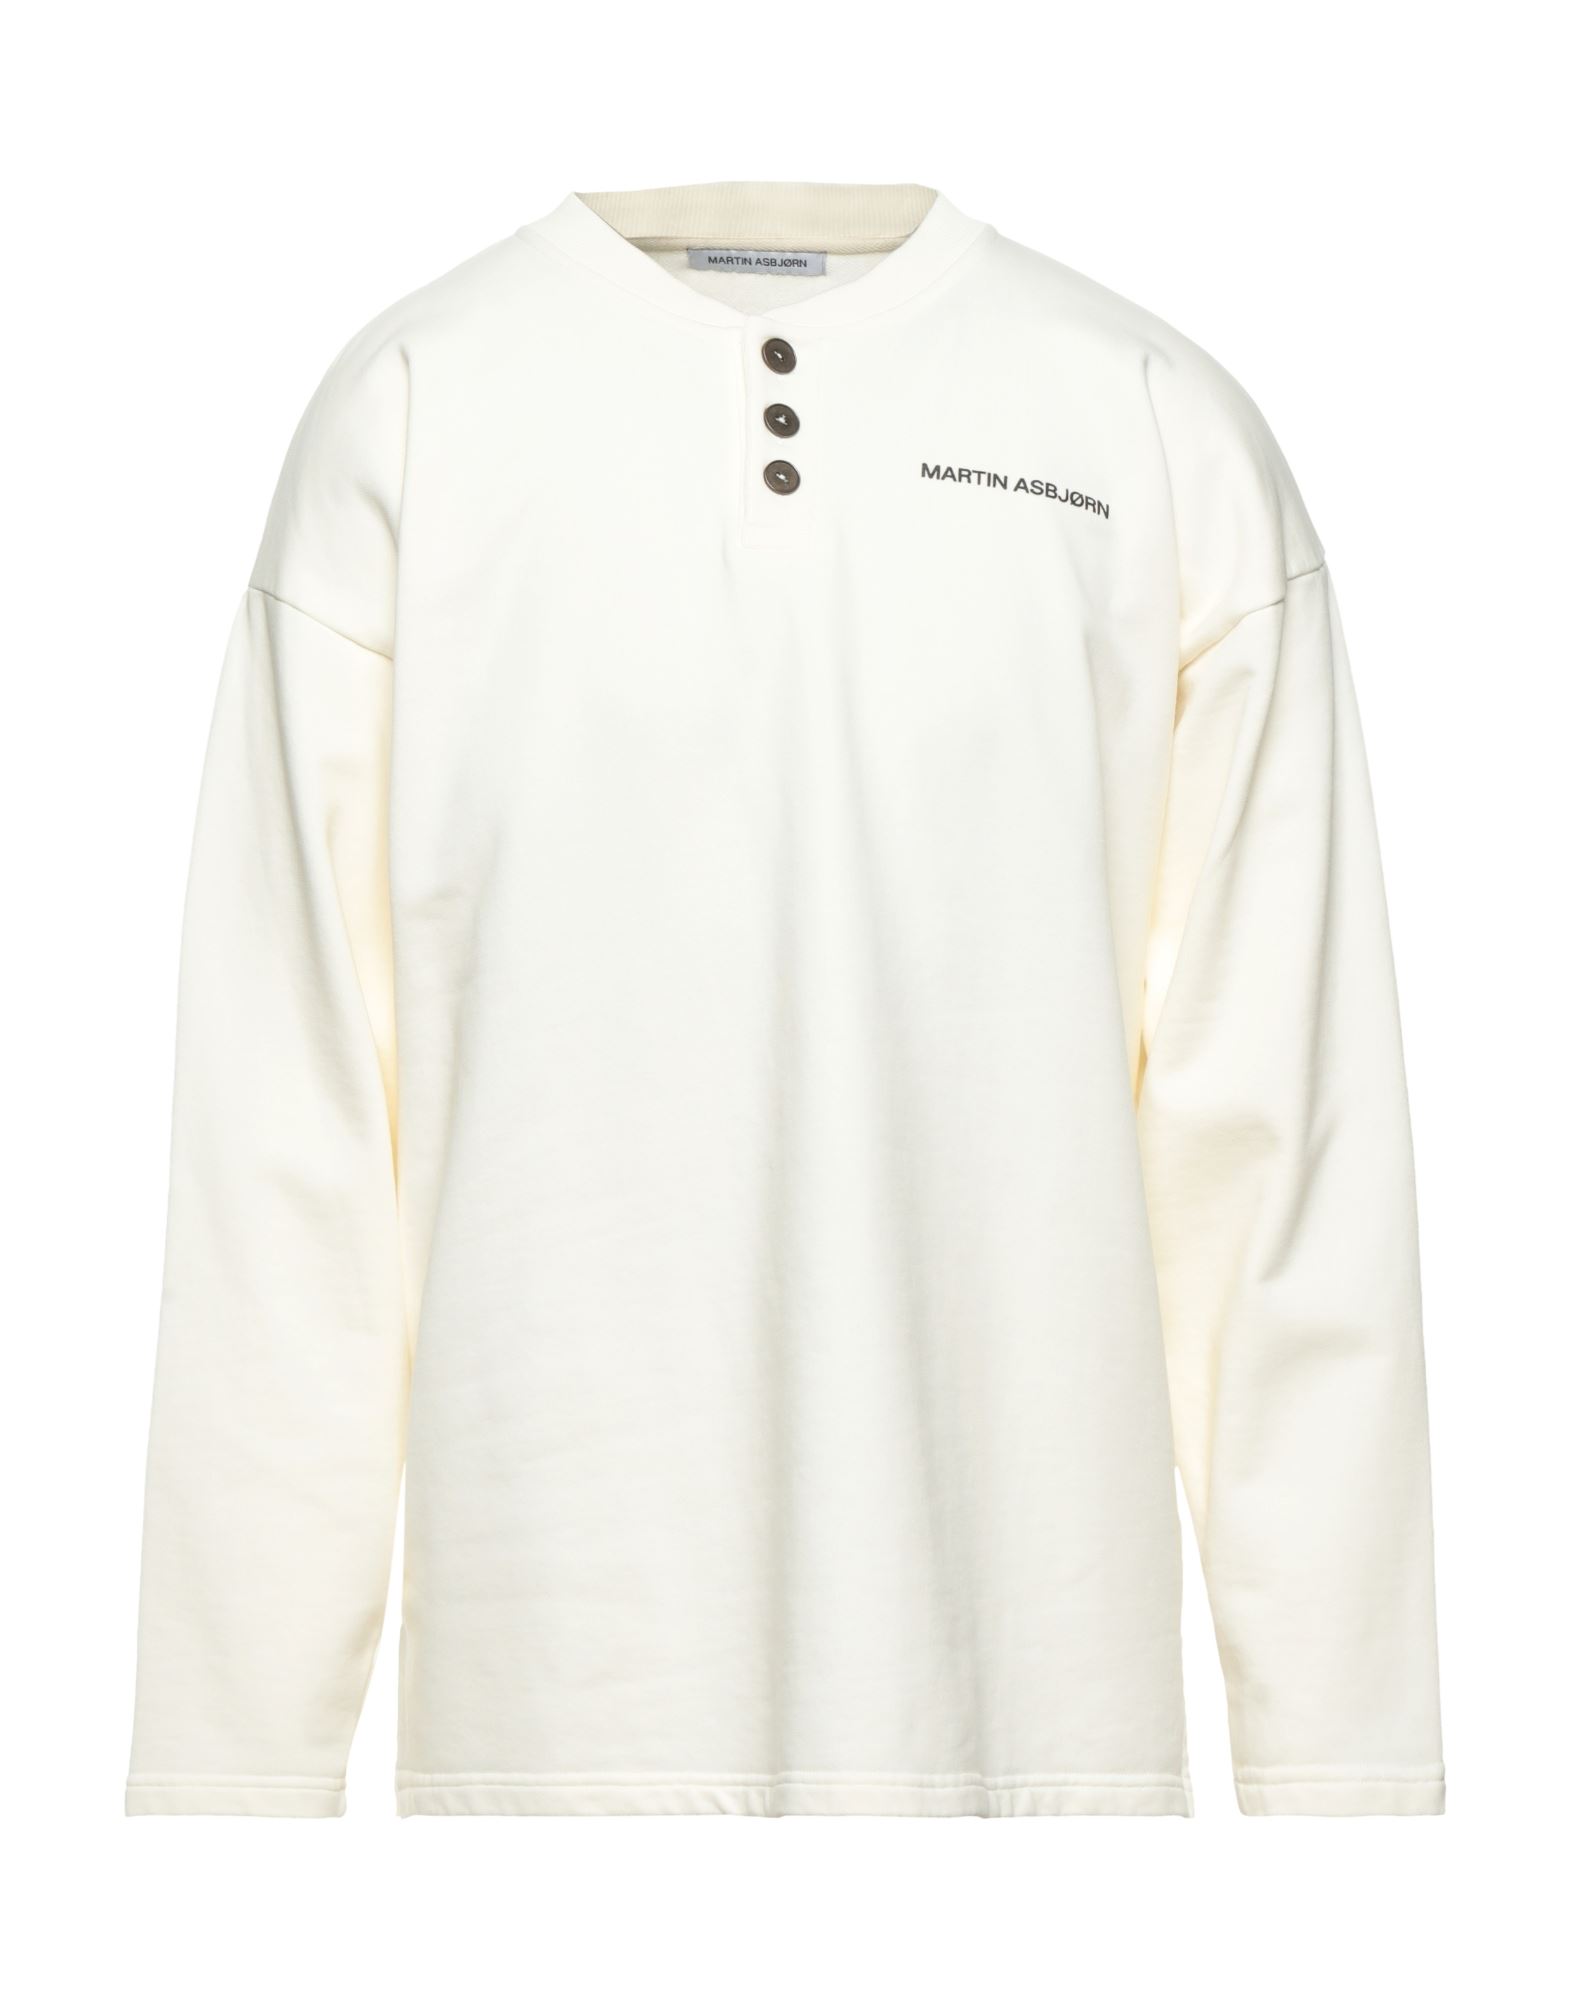 Martin Asbjørn Sweatshirts In White